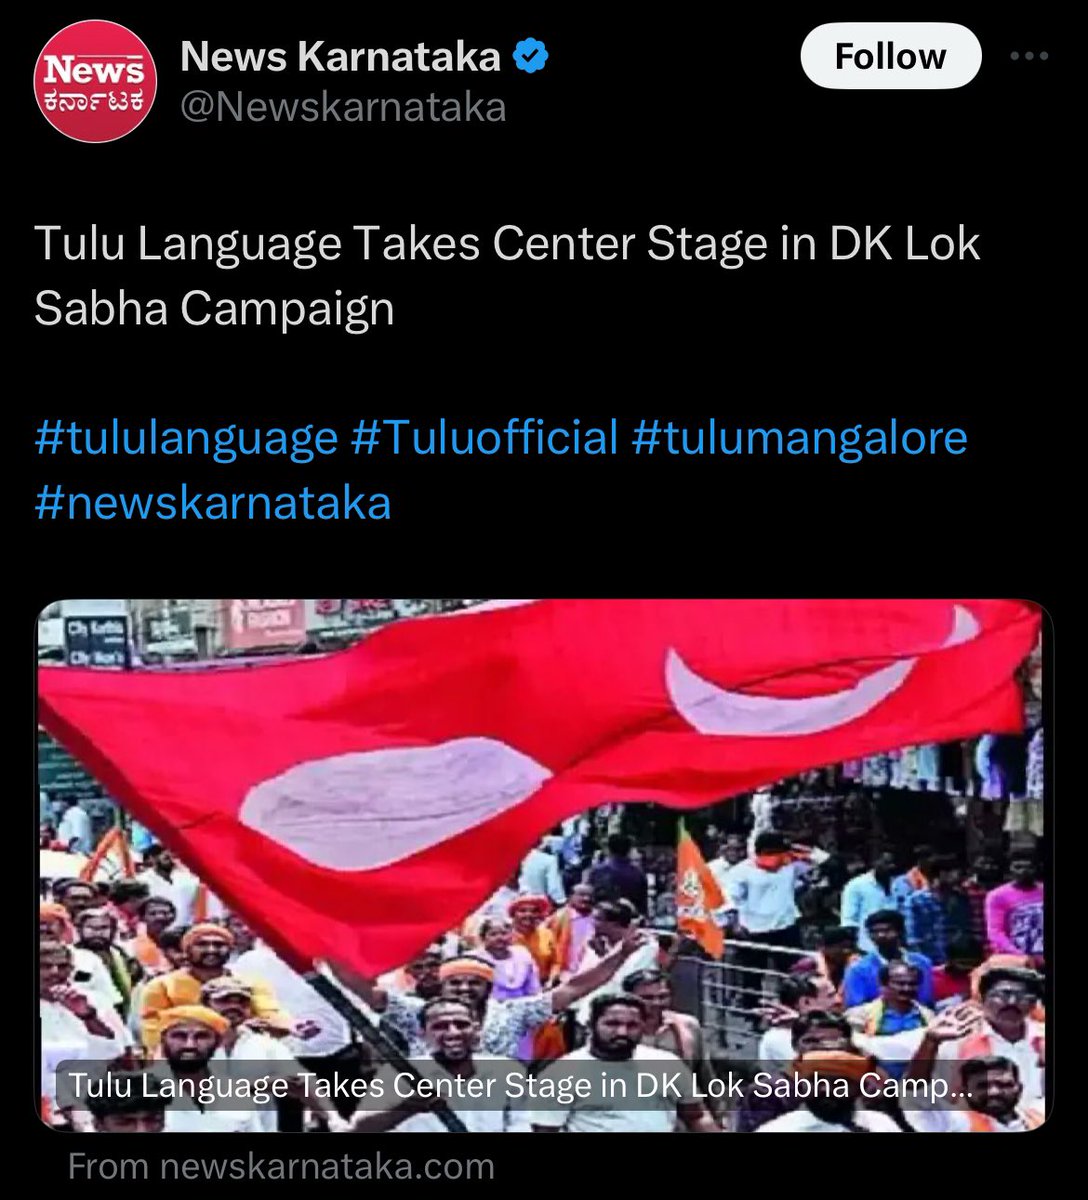 ತುಳು-ತುಳುನಾಡ್ದ ಗಾಳಿ ಬೀಜೊಂದು ಉಂಡು. ವೋಟ್ ಕರೀನೇ ಉಂತಿಜಿಡ ಯಾವು. Much needed change in #Tulunad Hope it remains even after elections & #Tulu promises are fulfilled. #TulutoClassicalLanguage #TuluOfficialinKA #Tuluto8thSchedule @CaptBrijesh @PadmarajRamaiah @KotasBJP @JPH_official